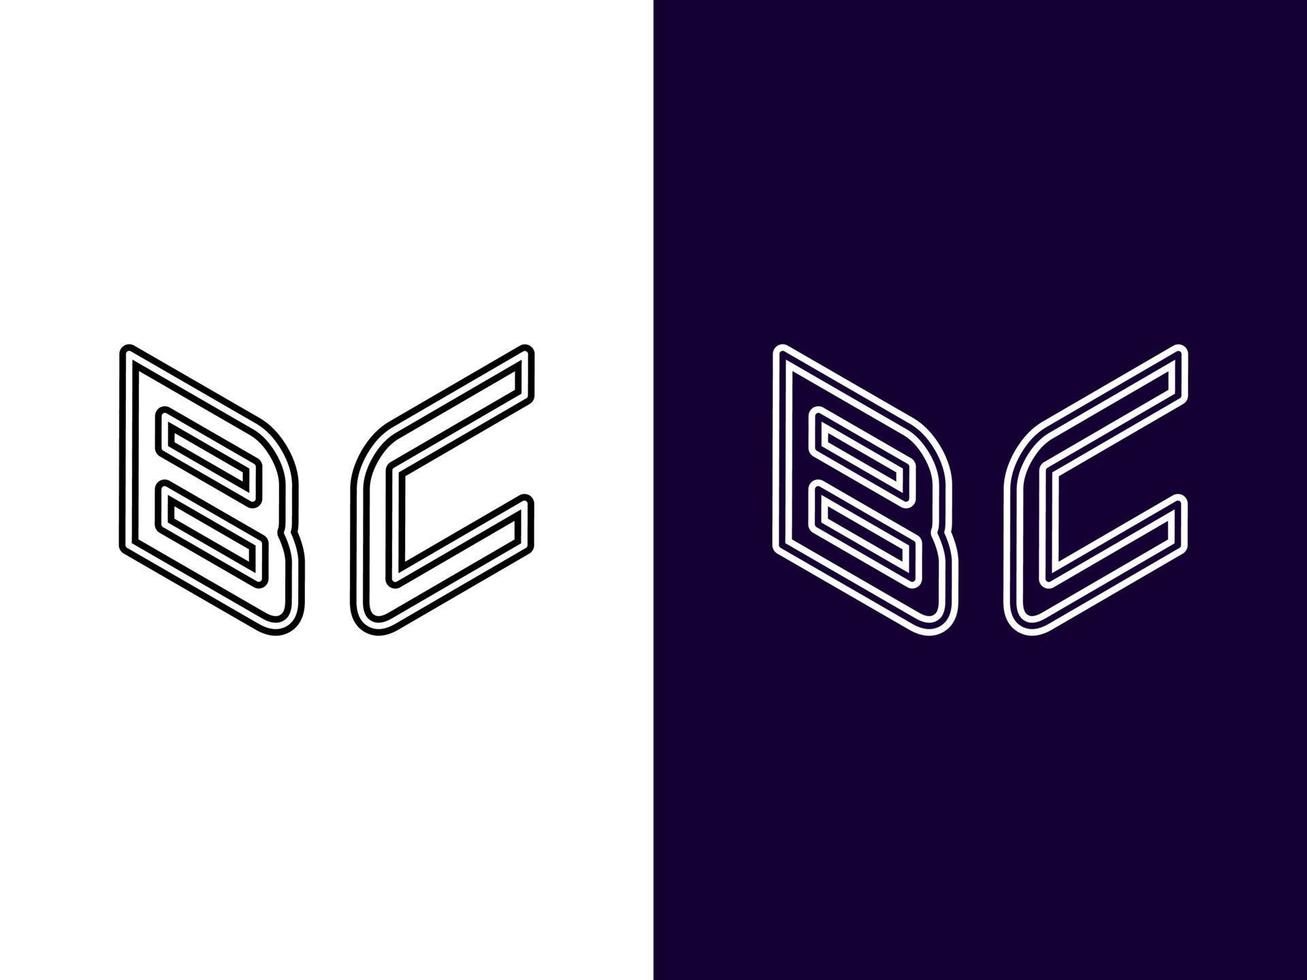 anfangsbuchstabe bc minimalistisches und modernes 3d-logo-design vektor